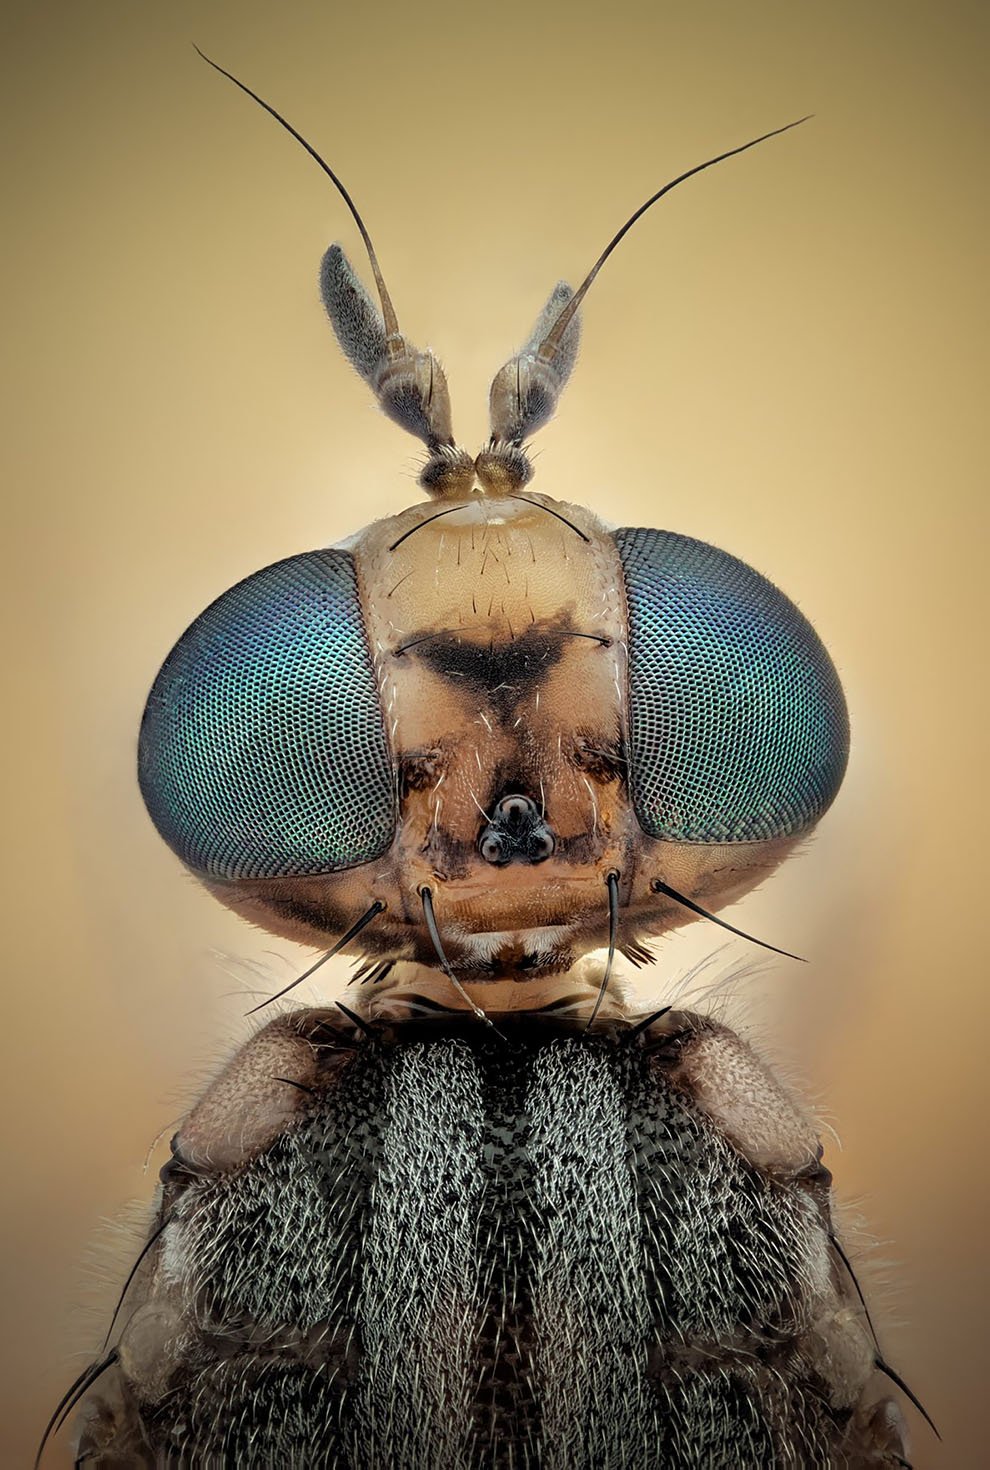 Макрофотографии насекомых от Хавьера Рупереса